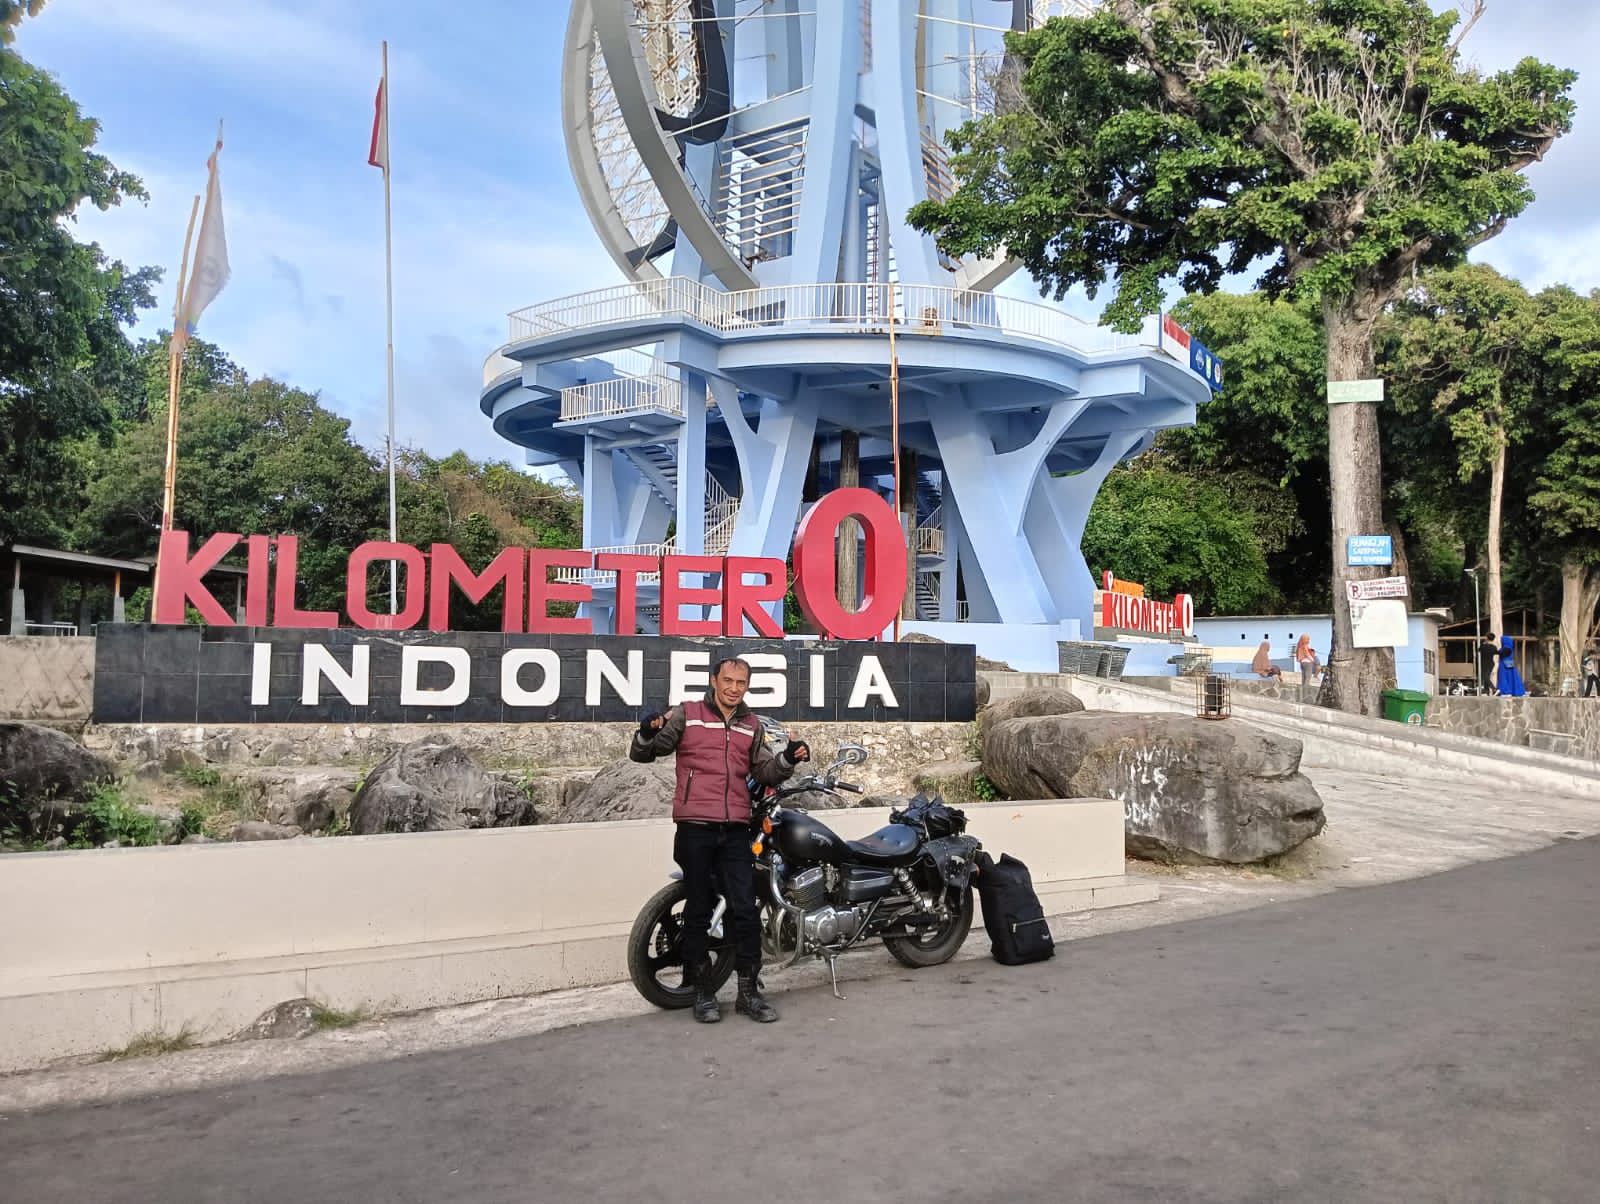 Member R-Bike Indonesia Taklukkan Rute Sepanjang 1.800 km Solo Touring Jakarta-Aceh